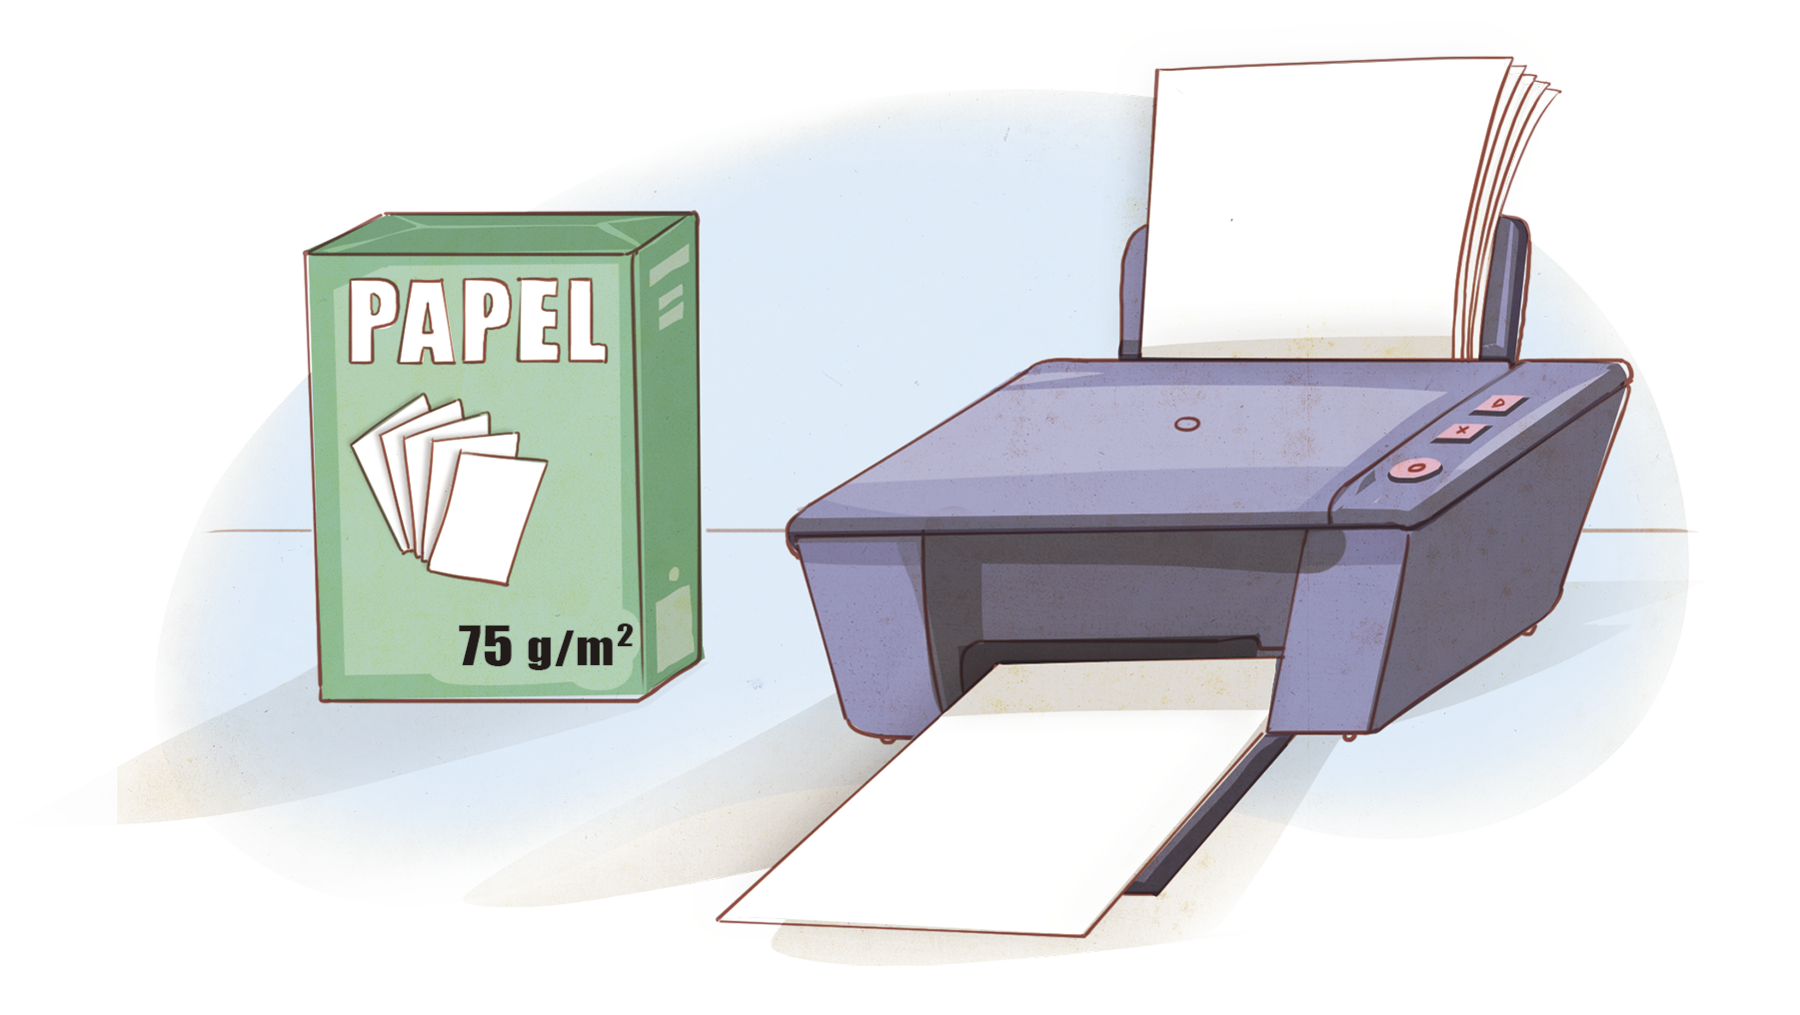 Ilustração. Caixa retangular de papel com 75 gramas por metro quadrado. Ao lado, uma impressora com folhas.